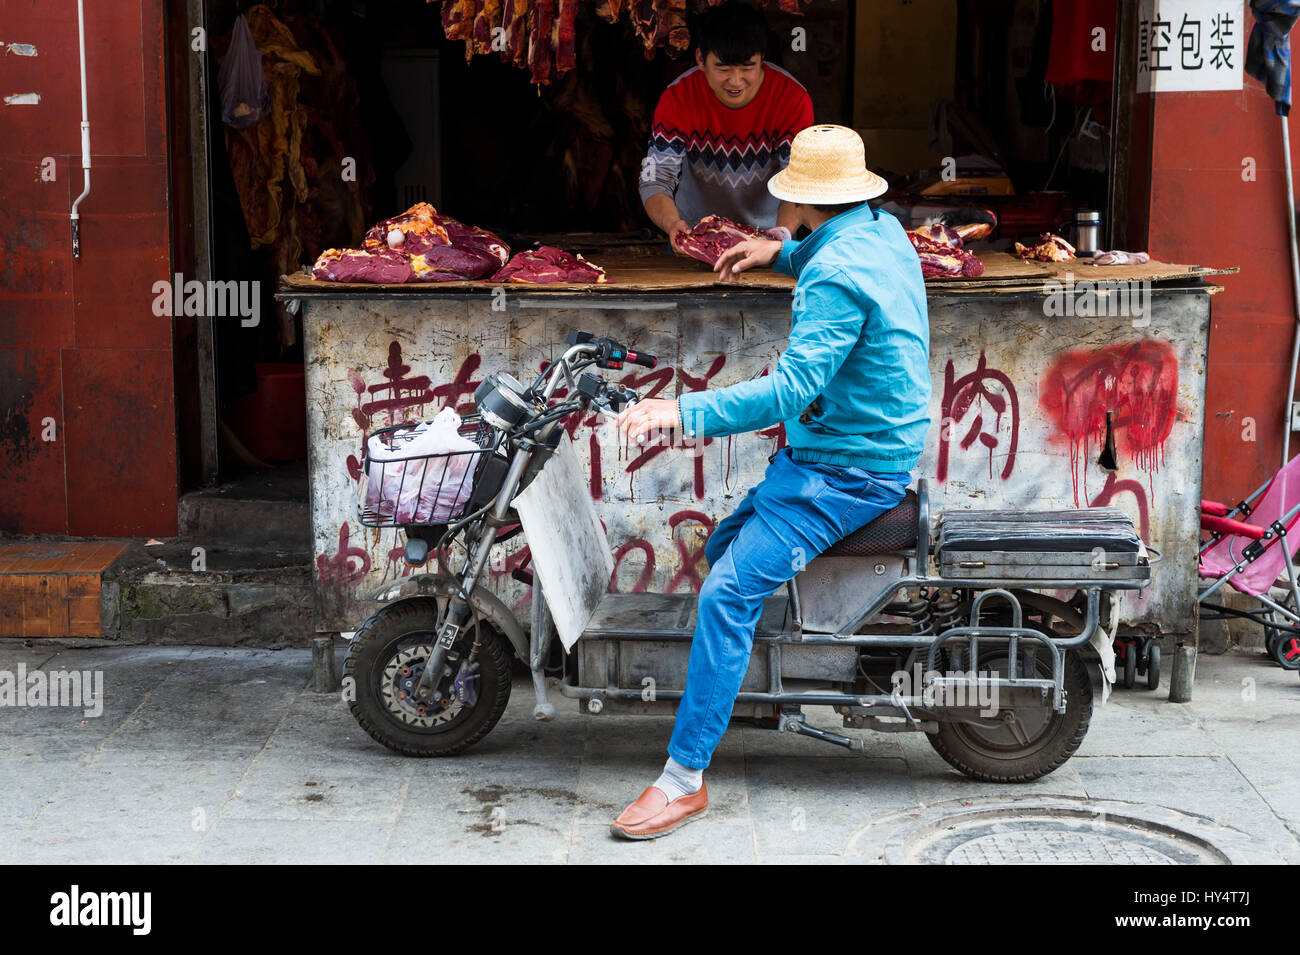 Lhassa, ancienne, l'homme sur un cyclomoteur en face de boucher Banque D'Images